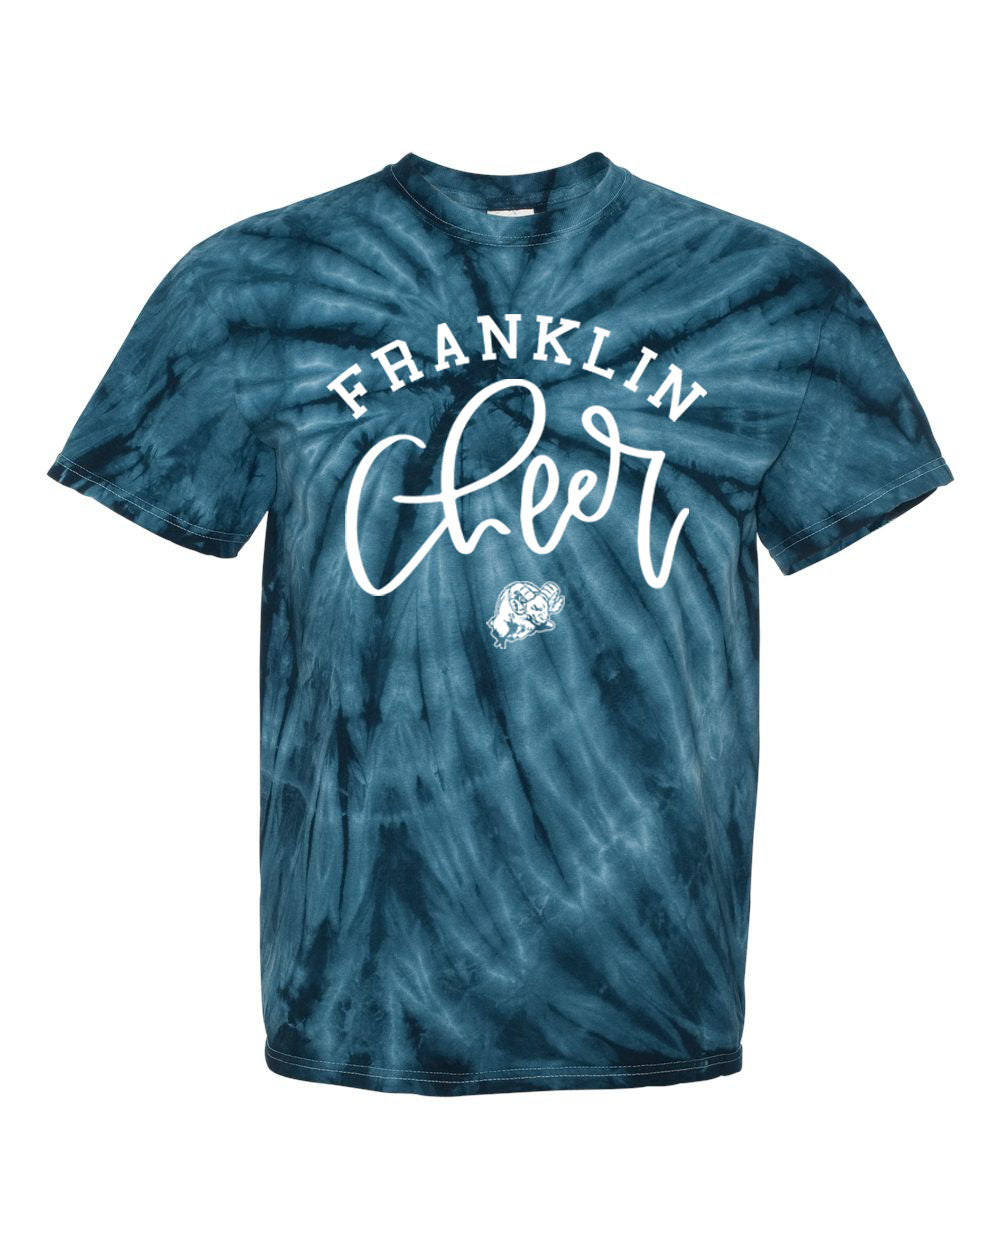 Franklin Cheer Tie Dye t-shirt Design 3